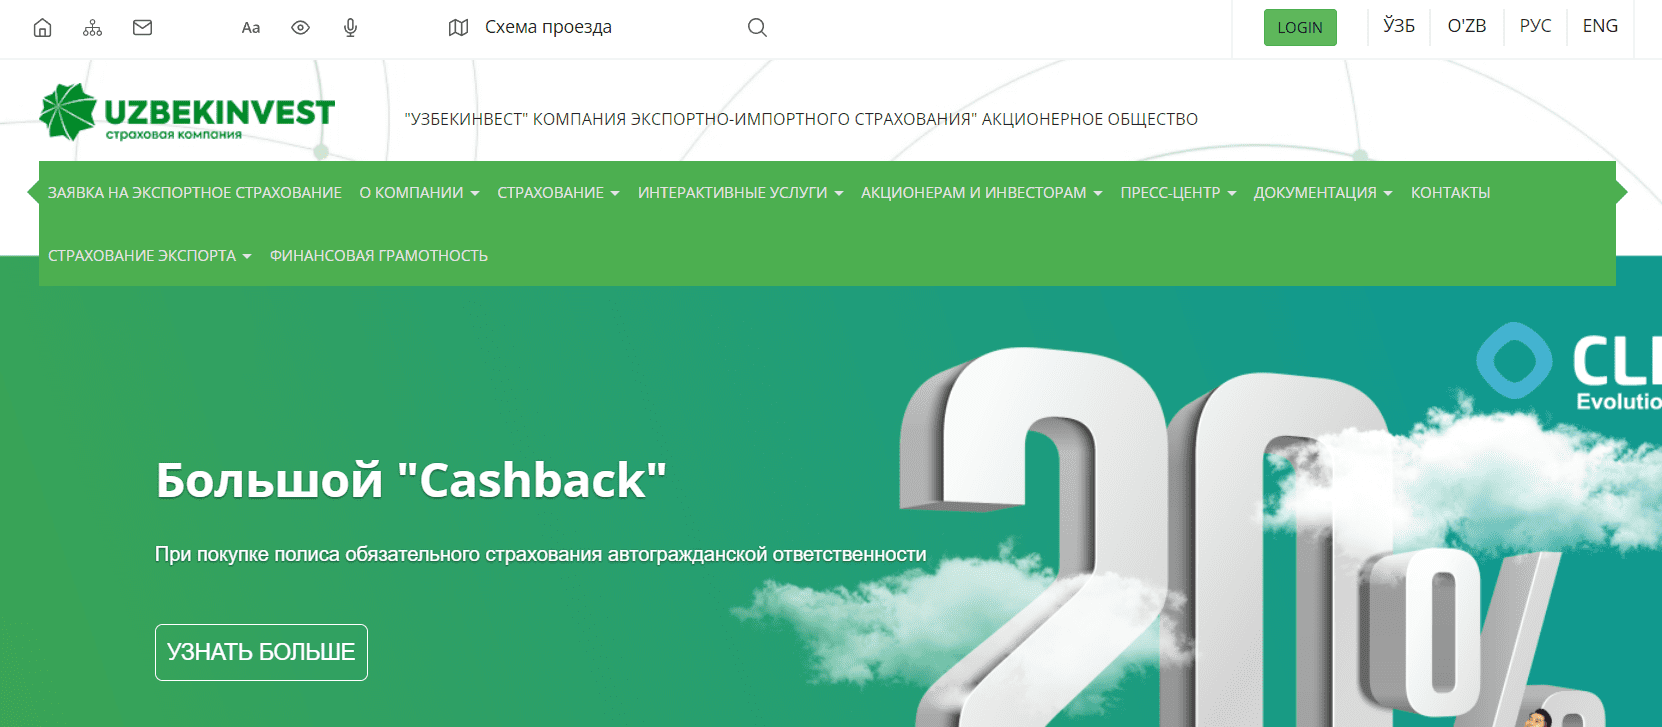 Узбекинвест (uzbekinvest.uz) - официальный сайт